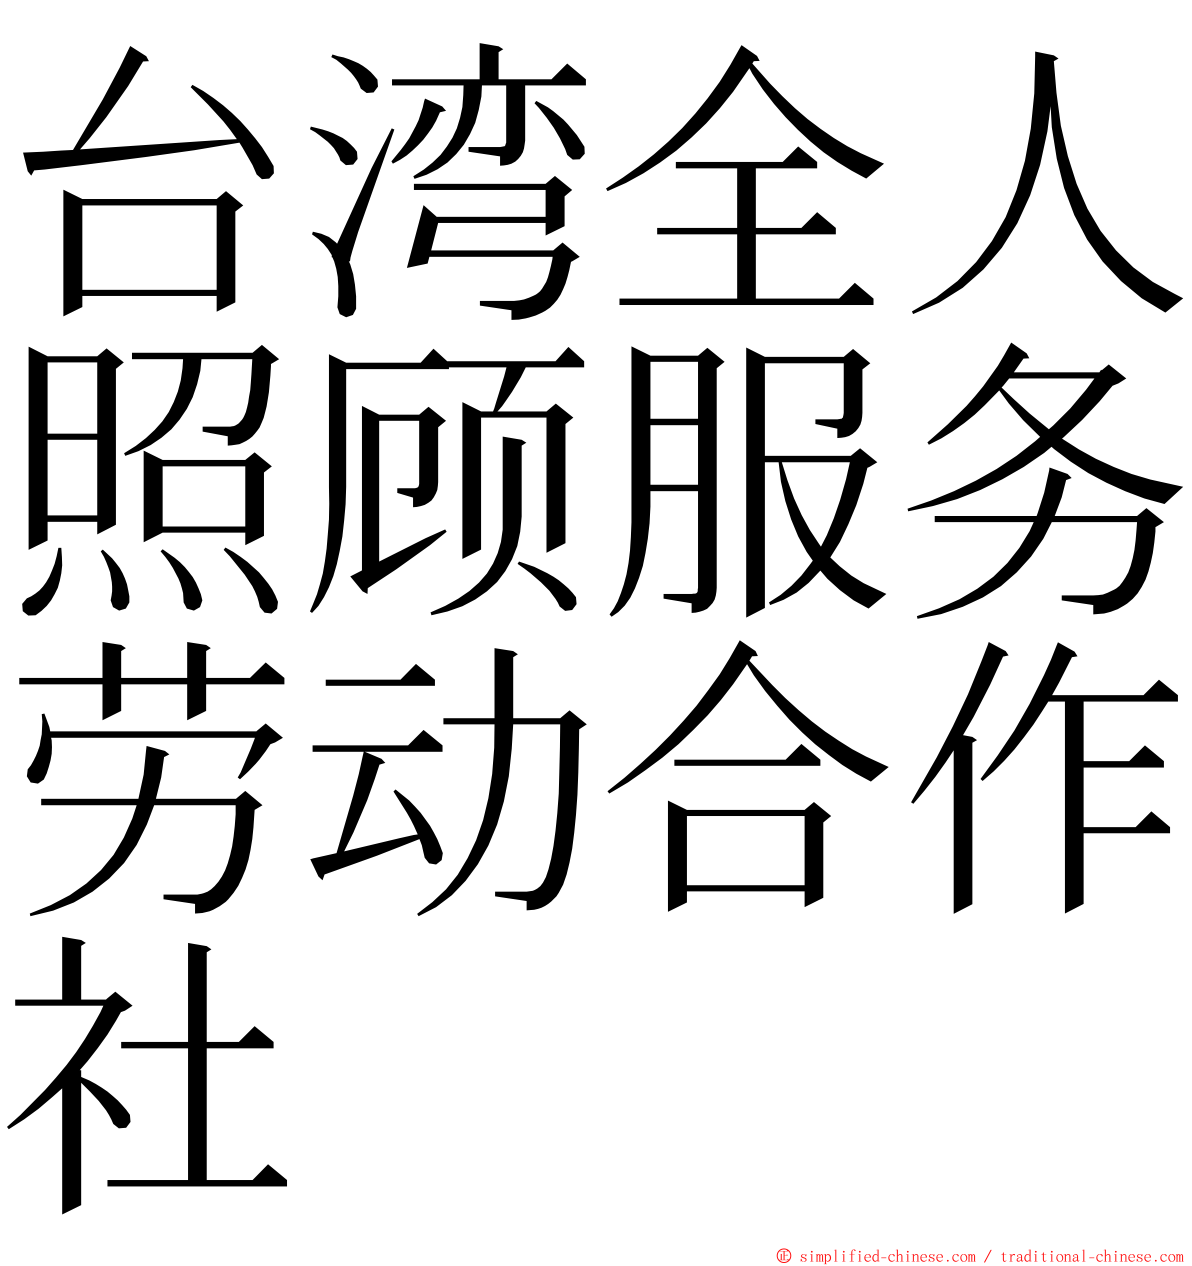 台湾全人照顾服务劳动合作社 ming font